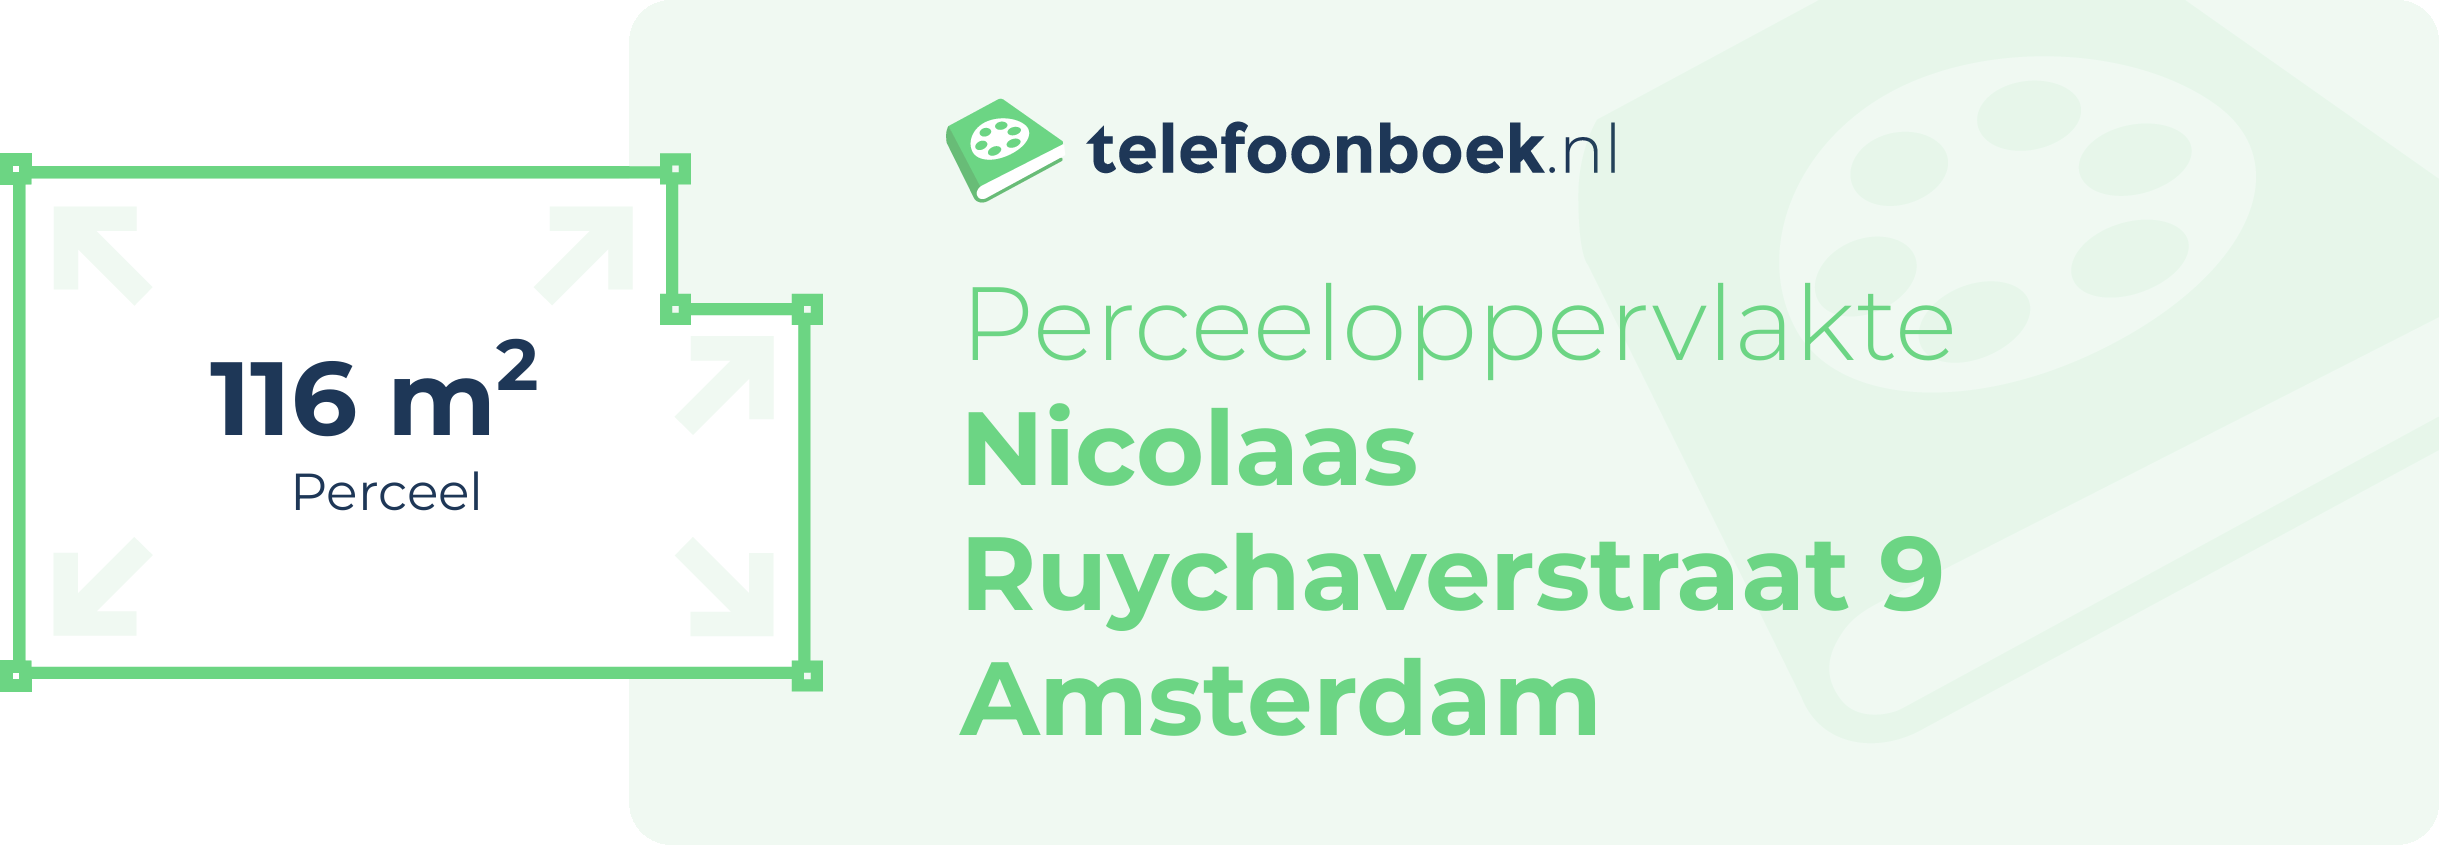 Perceeloppervlakte Nicolaas Ruychaverstraat 9 Amsterdam